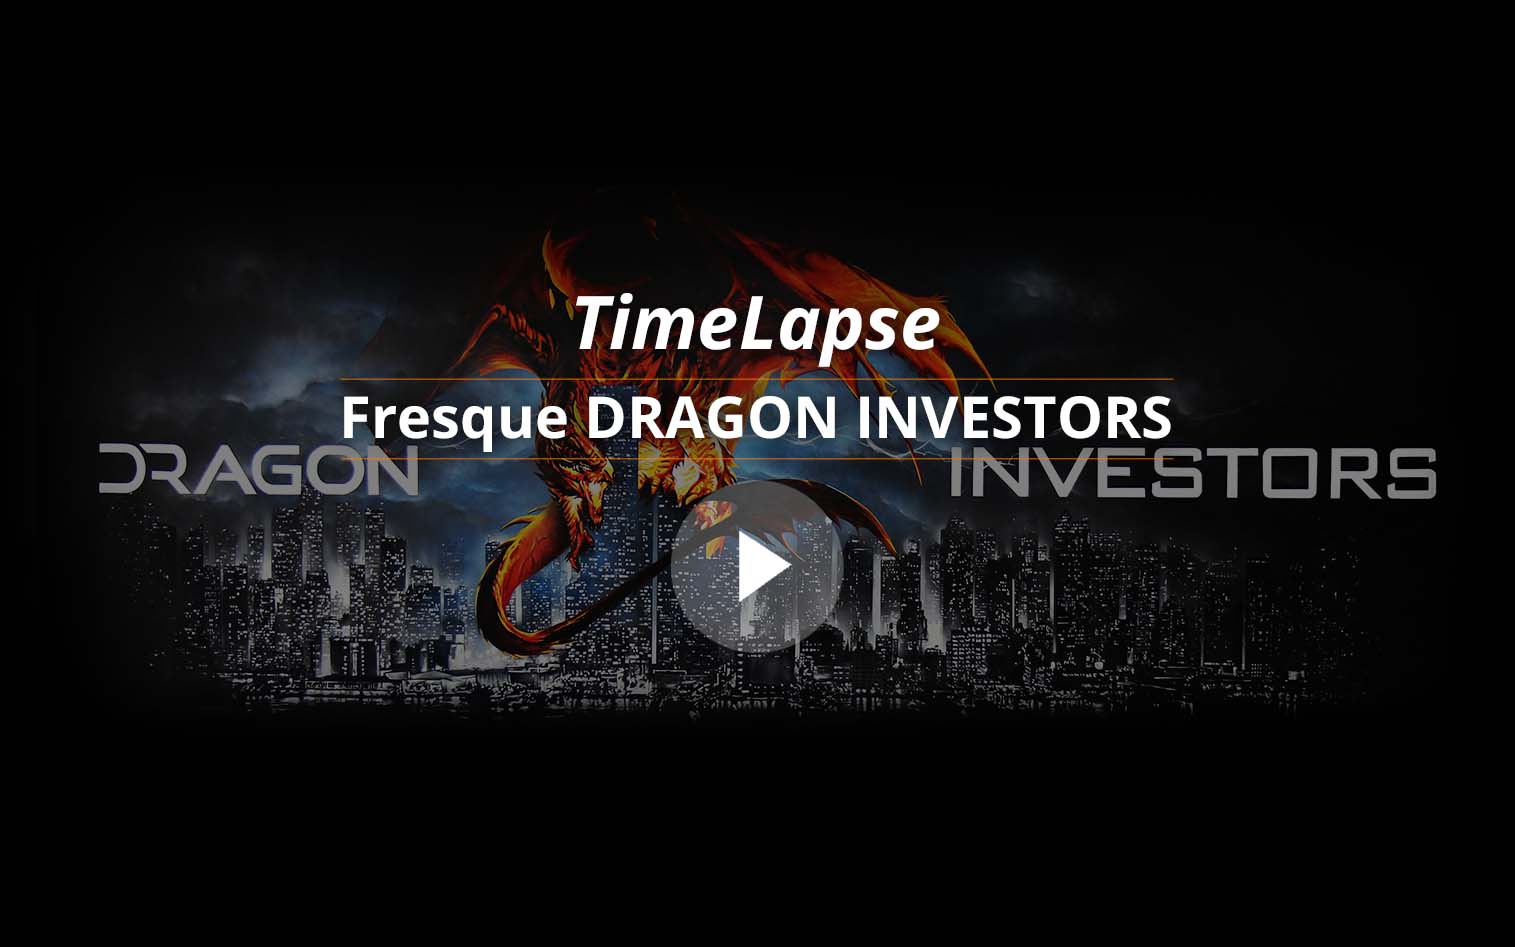 vignette video fresque dragon investors realisée à barcelone pour la société par frédéric michel langlet